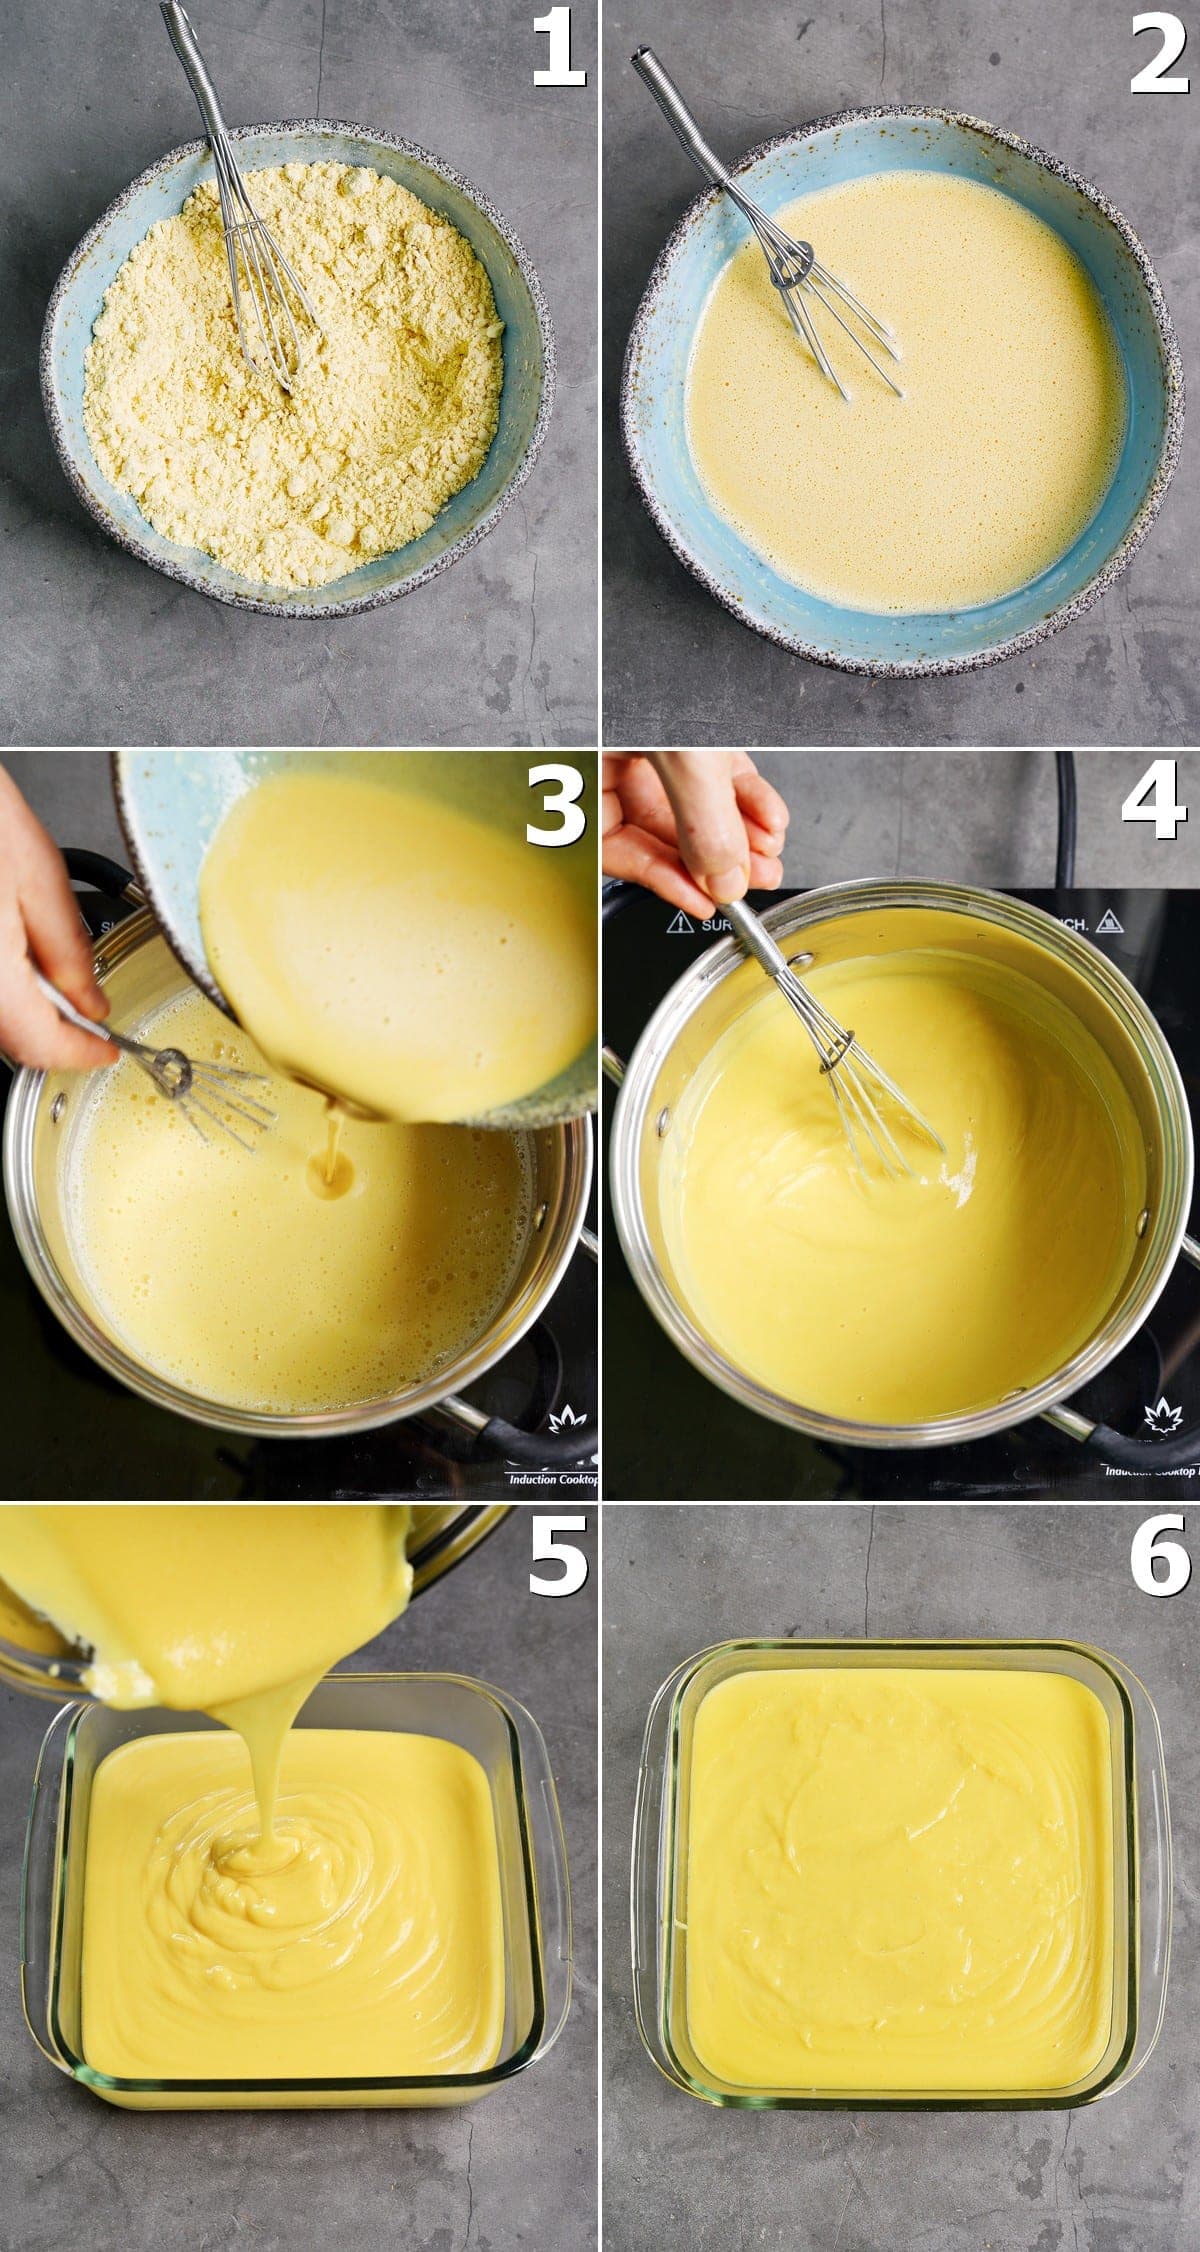 6 Schritt-für-Schritt-Fotos für die Zubereitung von Kichererbsenmehl-Tofu